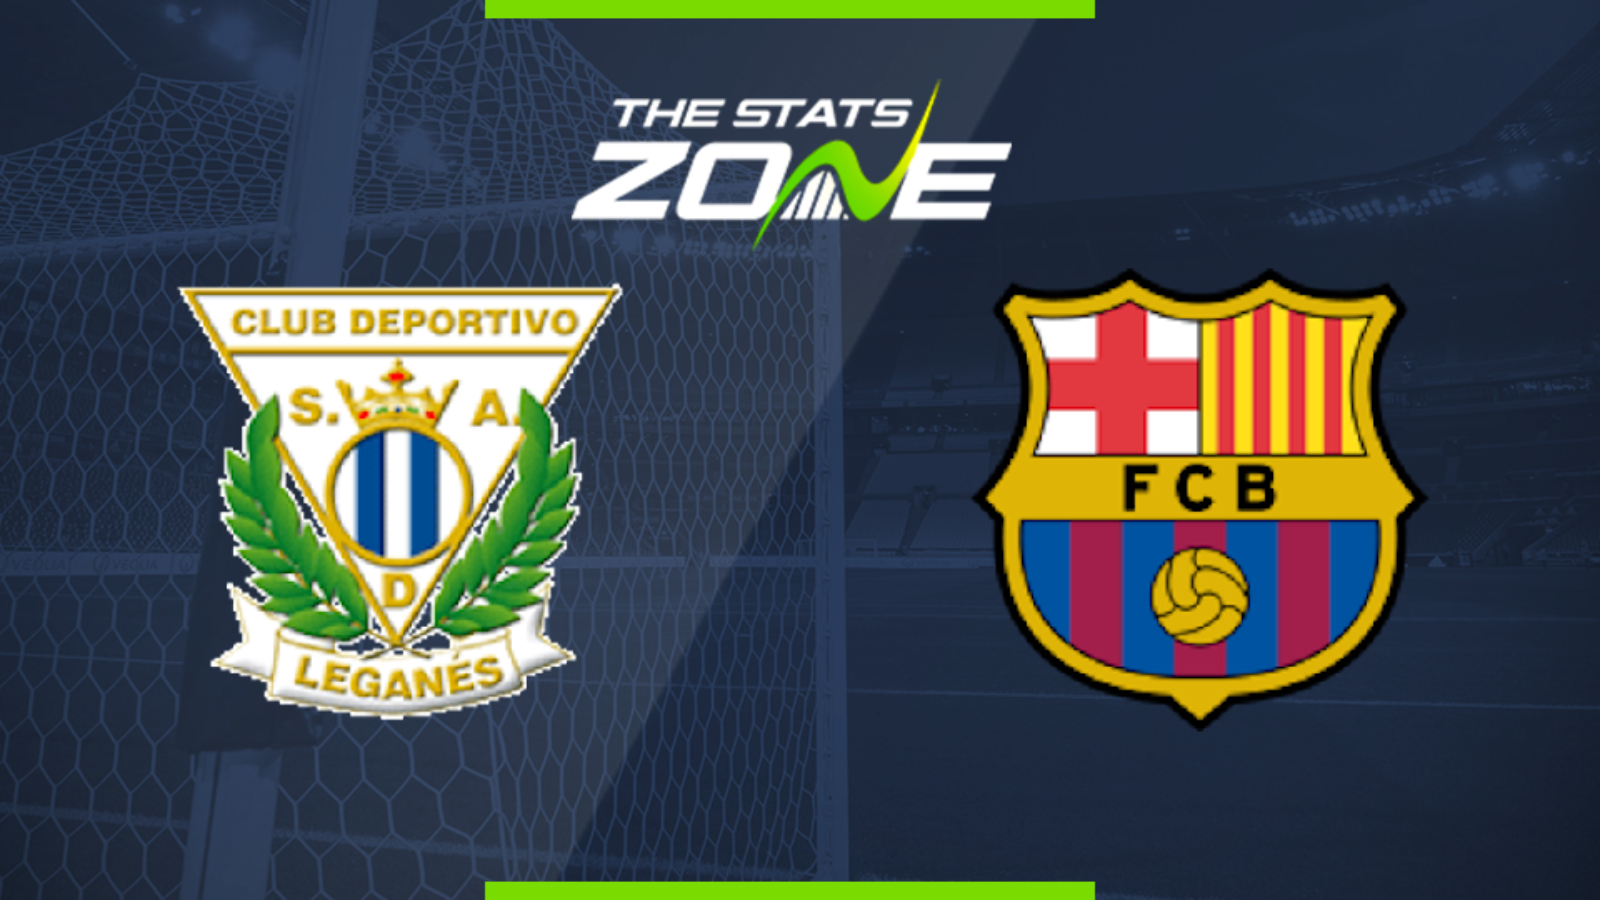 2019-20 Spanish Primera – Leganes vs Barcelona Preview & Prediction - The Stats Zone1600 x 900